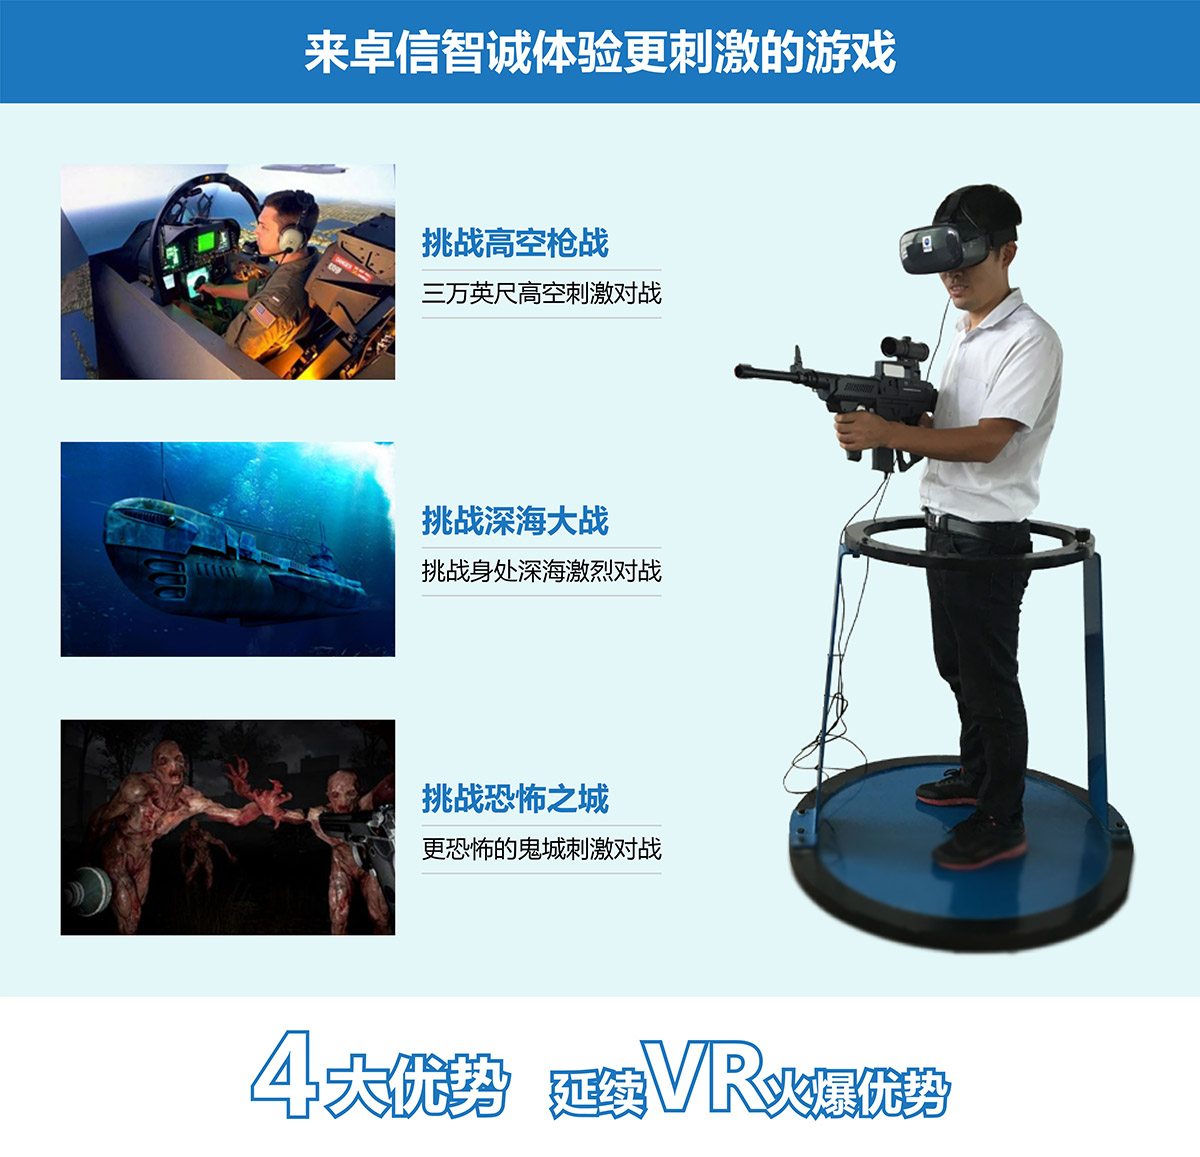 巨幕影院VR对战4大优势延续vr火爆优势.jpg